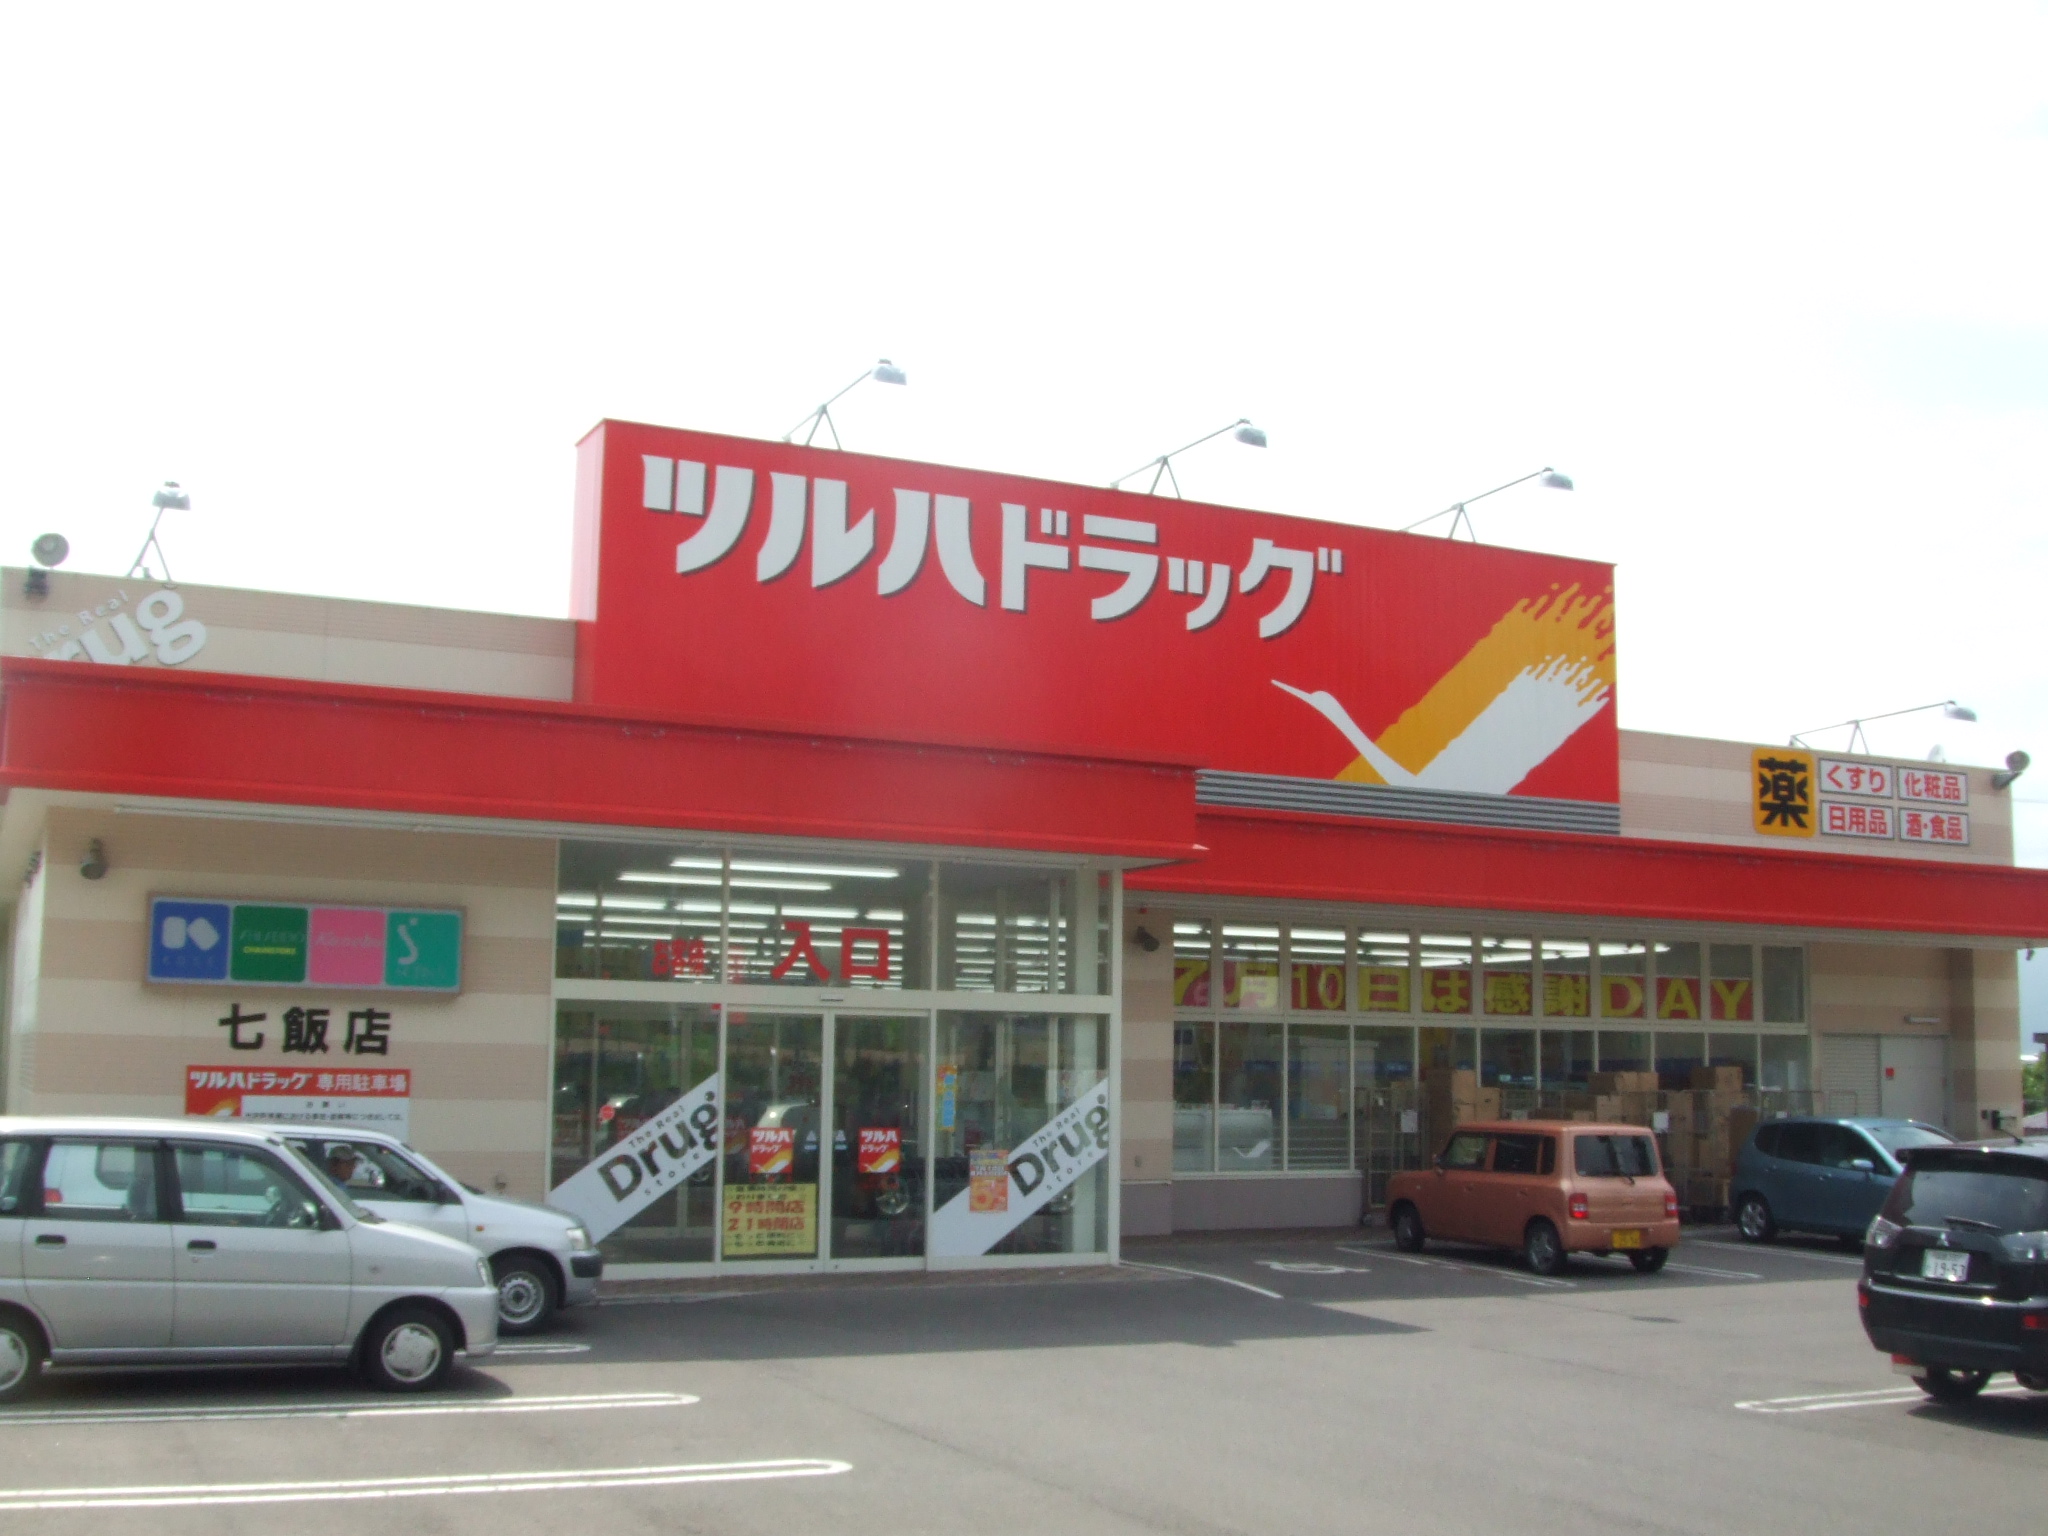 Dorakkusutoa. Tsuruha drag Nanae shop 931m until (drugstore)